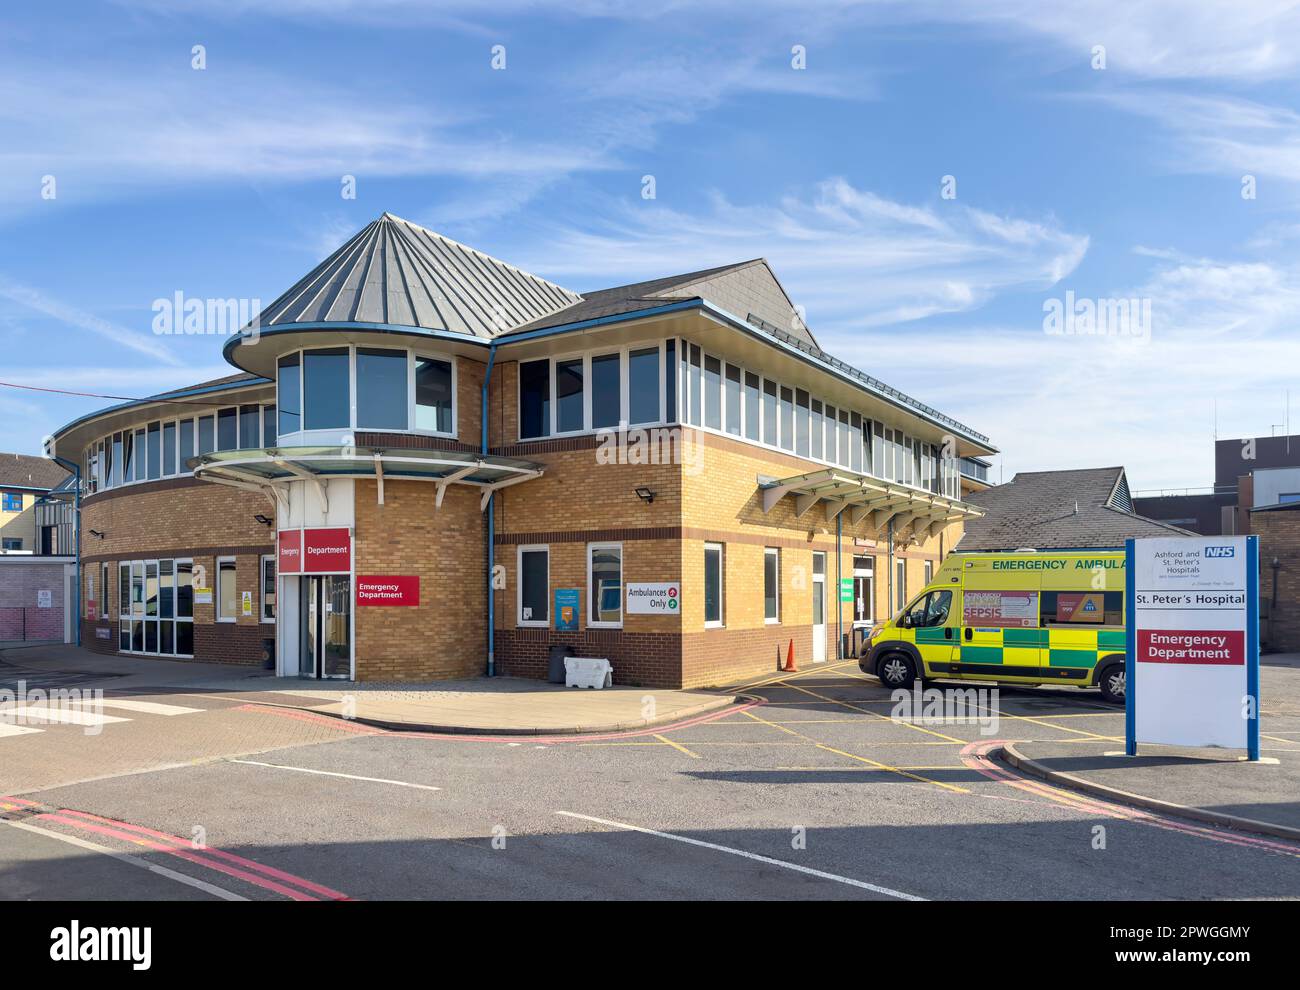 Service des accidents et des urgences, hôpital St Peter's NHS, Guildford Road, Lyne, Surrey, Angleterre, Royaume-Uni Banque D'Images